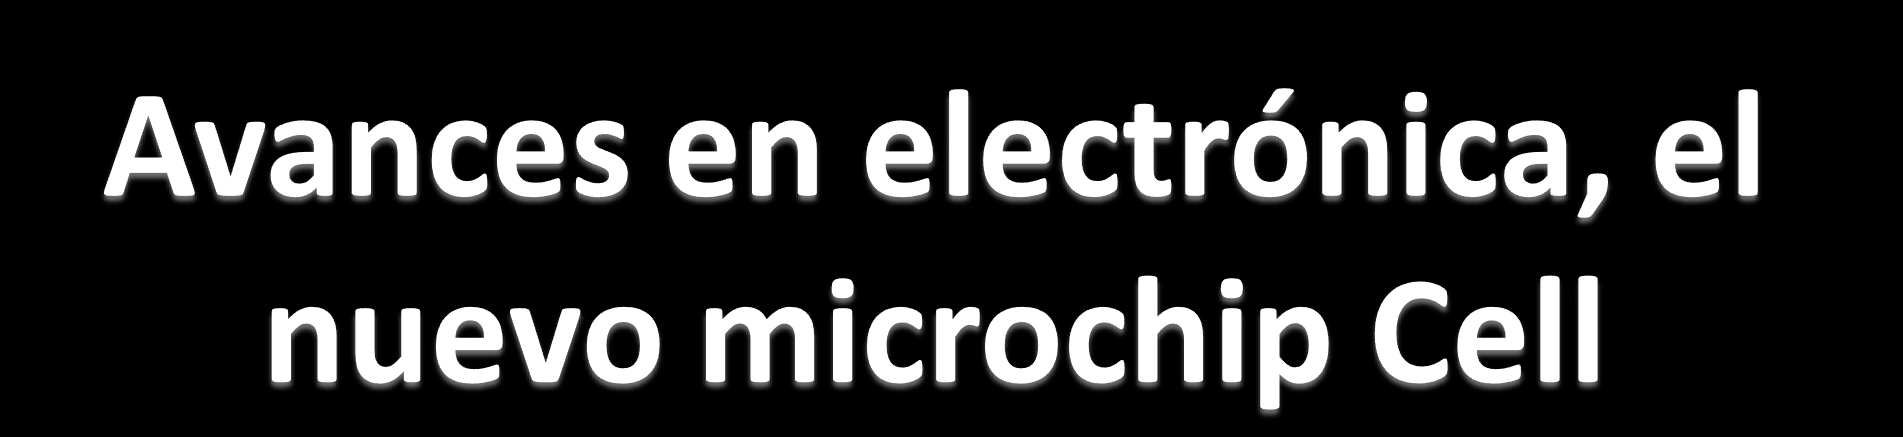 Las grandes empresas electrónicas están desarrollando nuevos productos que llevan un nuevo microchip revolucionario llamado "Cell".